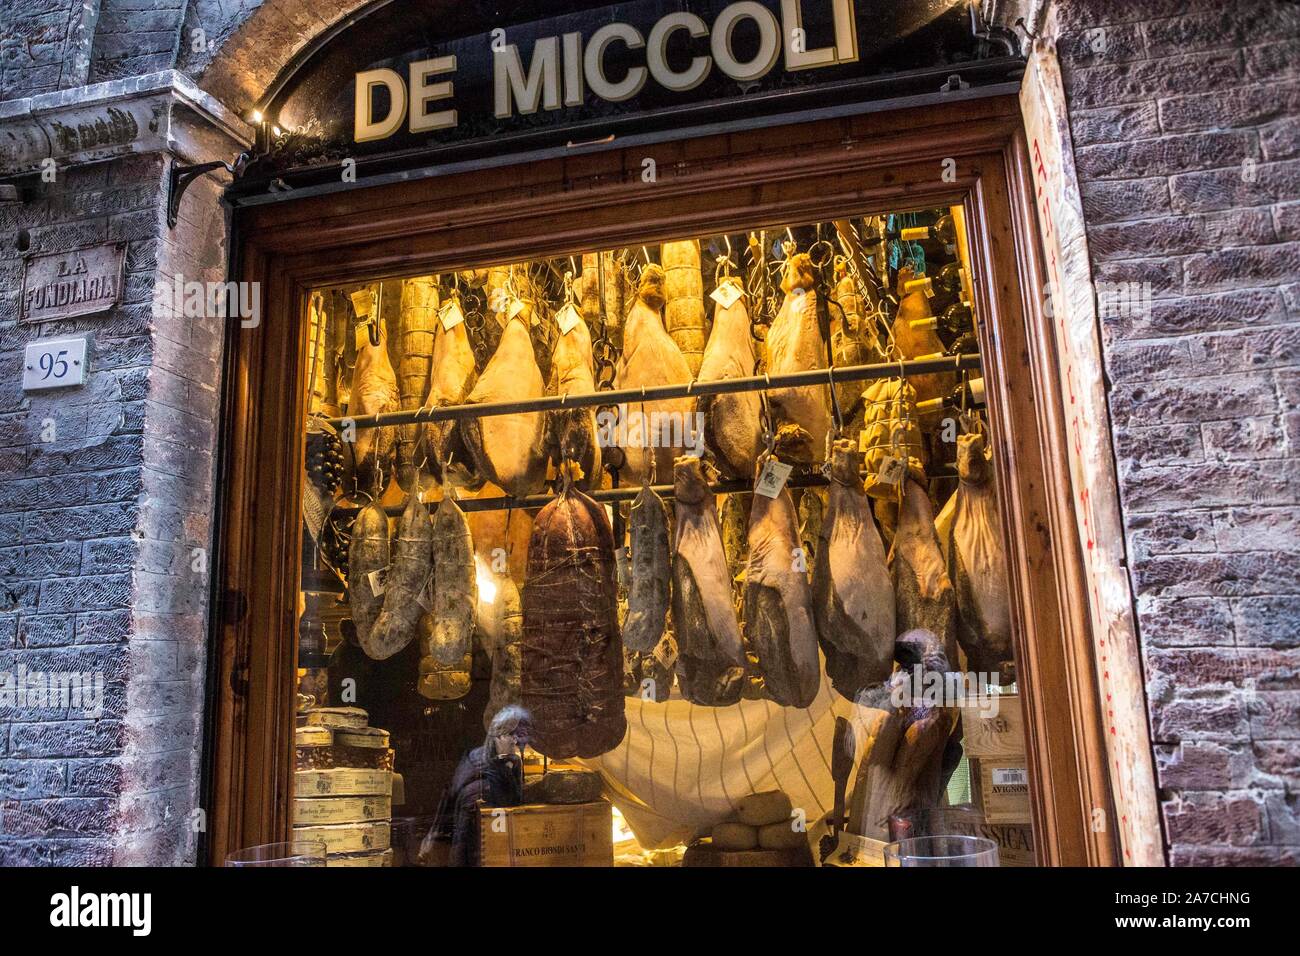 Feinkost in Siena: Pizzicheria de Miccoli verkauft Schinken, Wildschwein, Käse und andere Spezialitäten aus der Region. Die Schinkenkeulen hängen an d Stock Photo